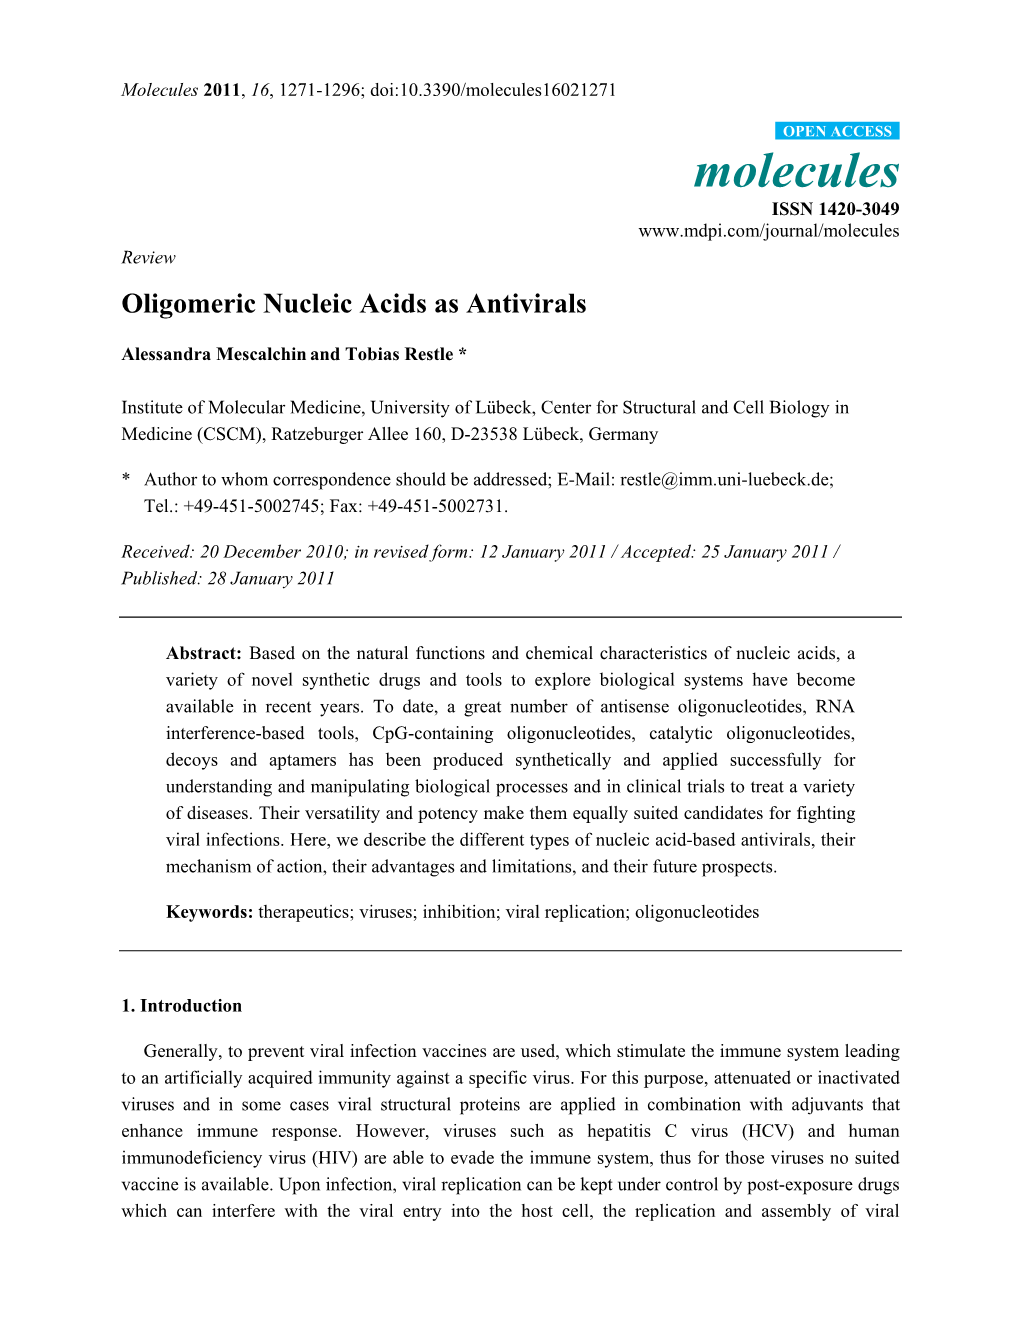 Oligomeric Nucleic Acids As Antivirals